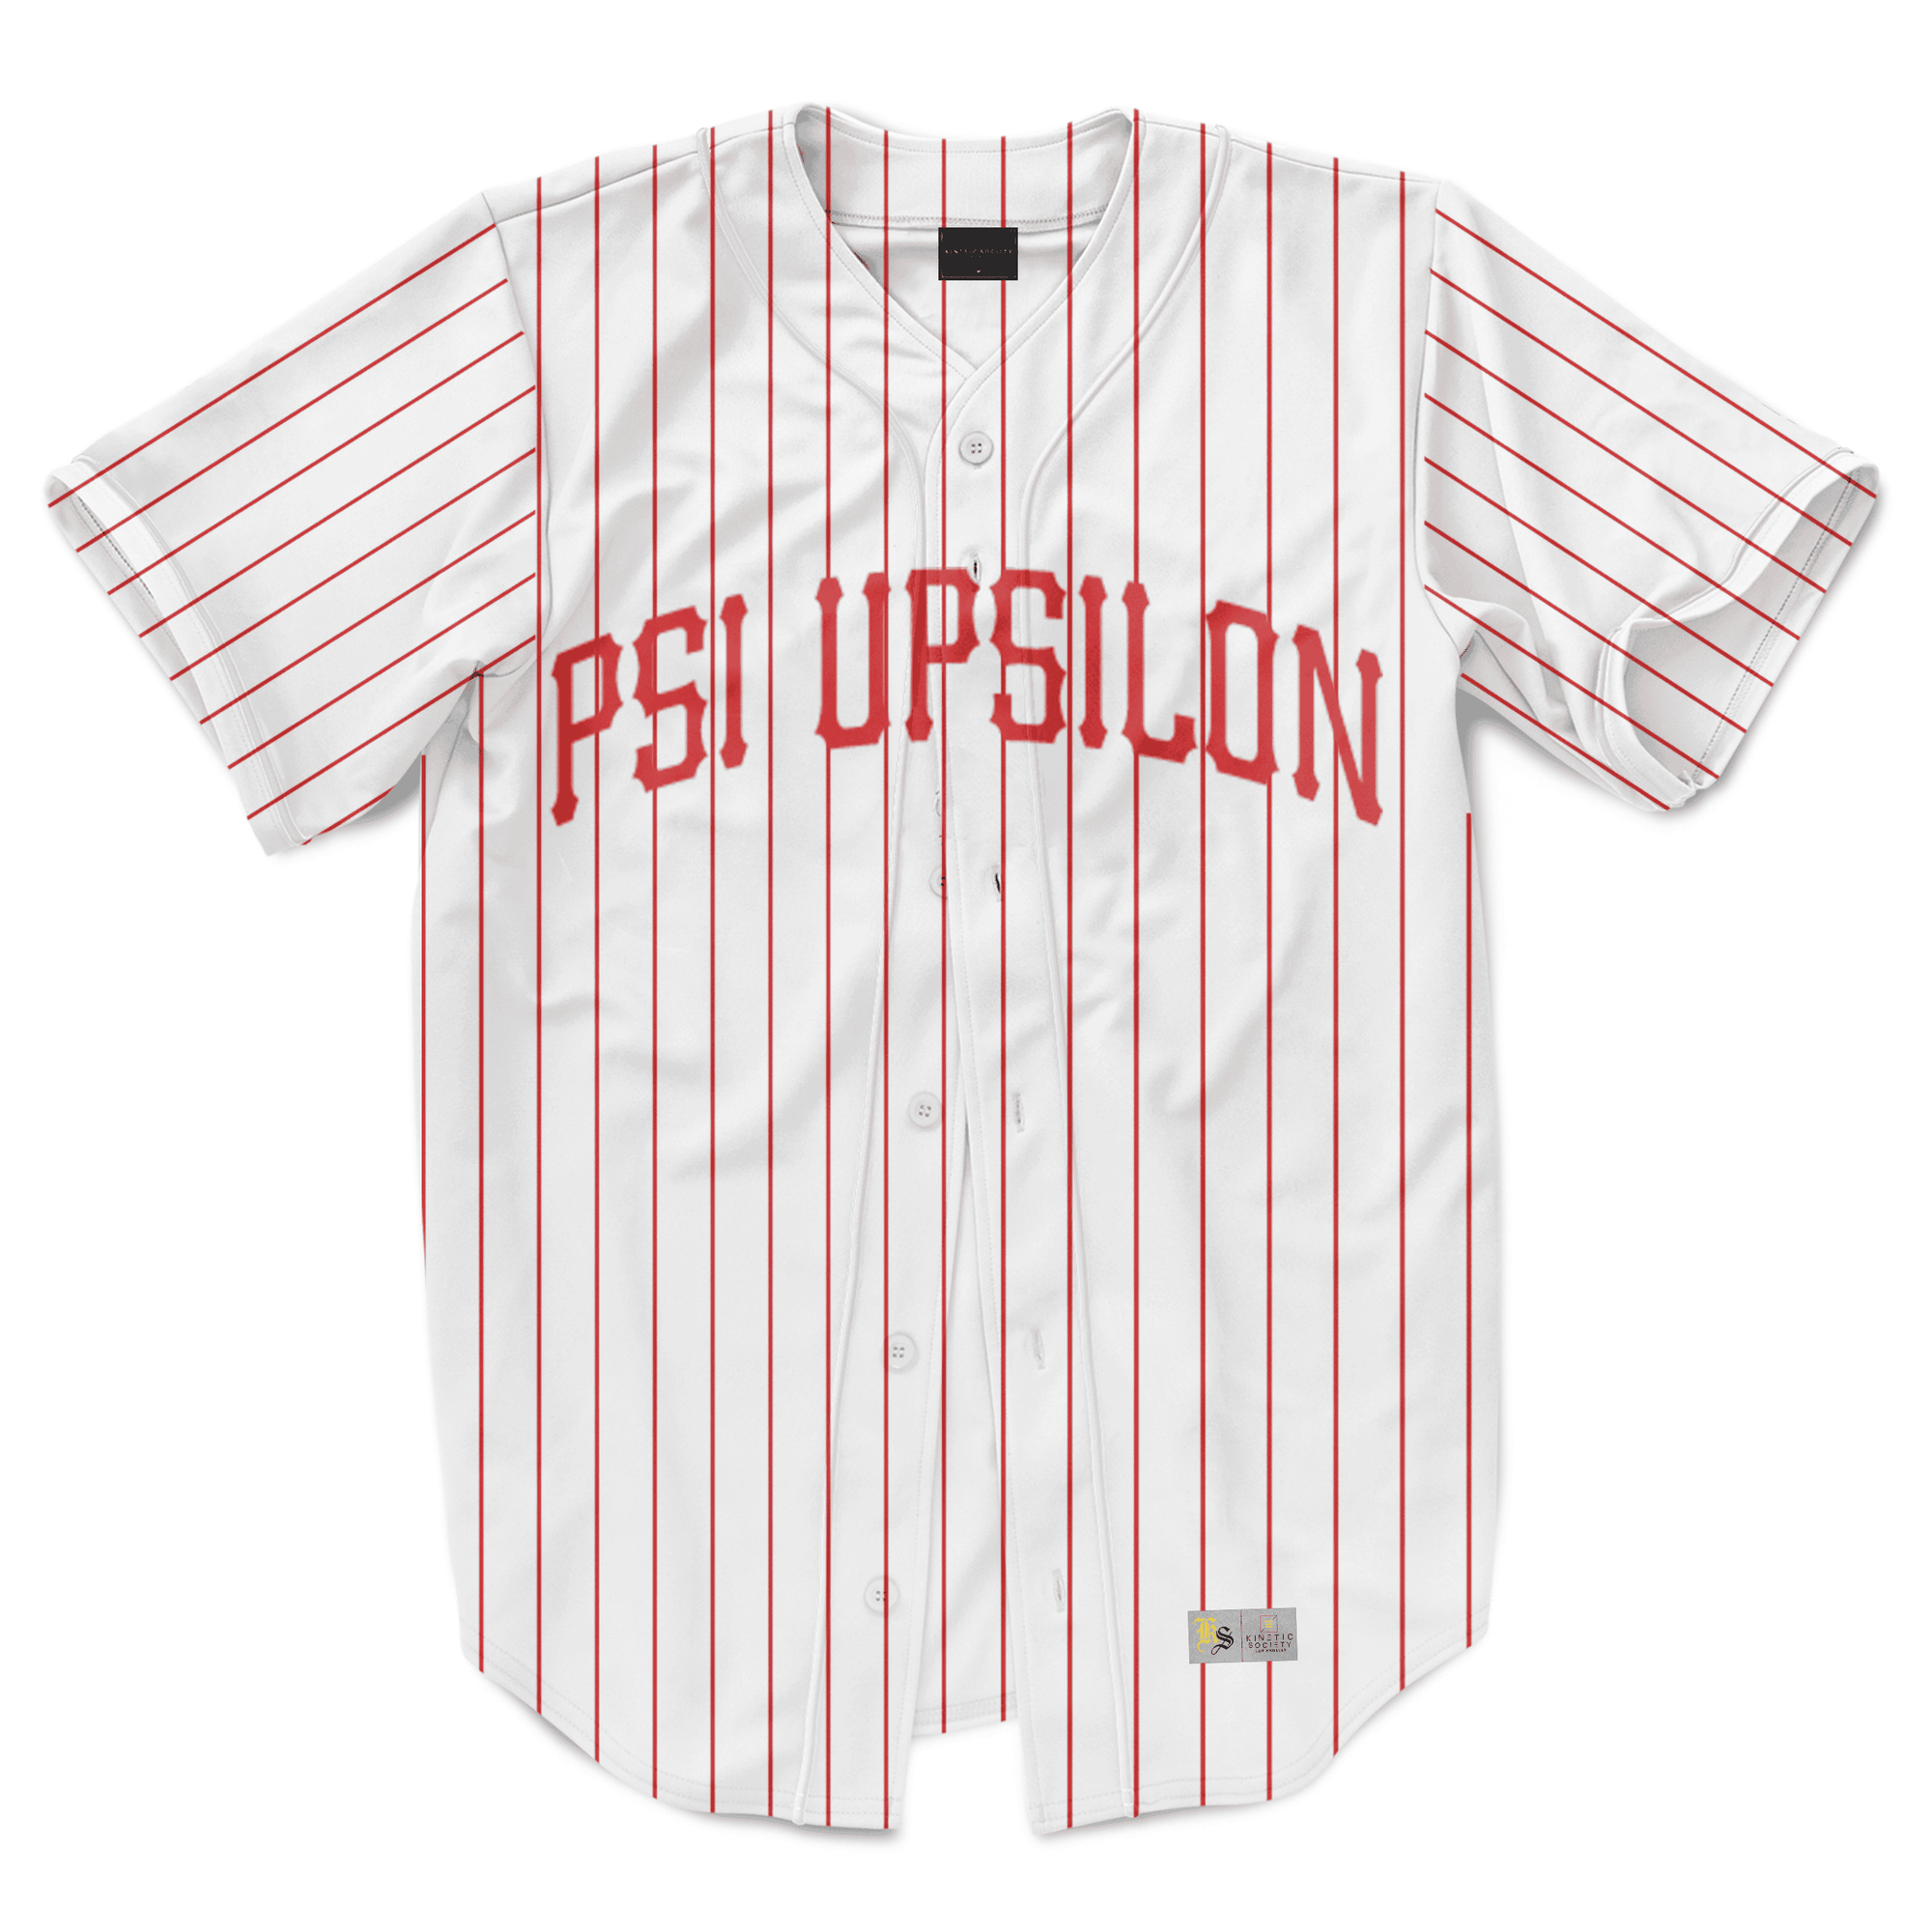 Psi Upsilon - Red Pinstripe Baseball Jersey